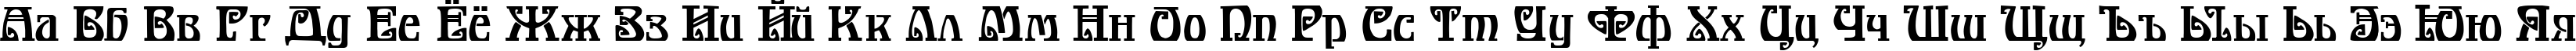 Пример написания русского алфавита шрифтом Bonapart-Modern